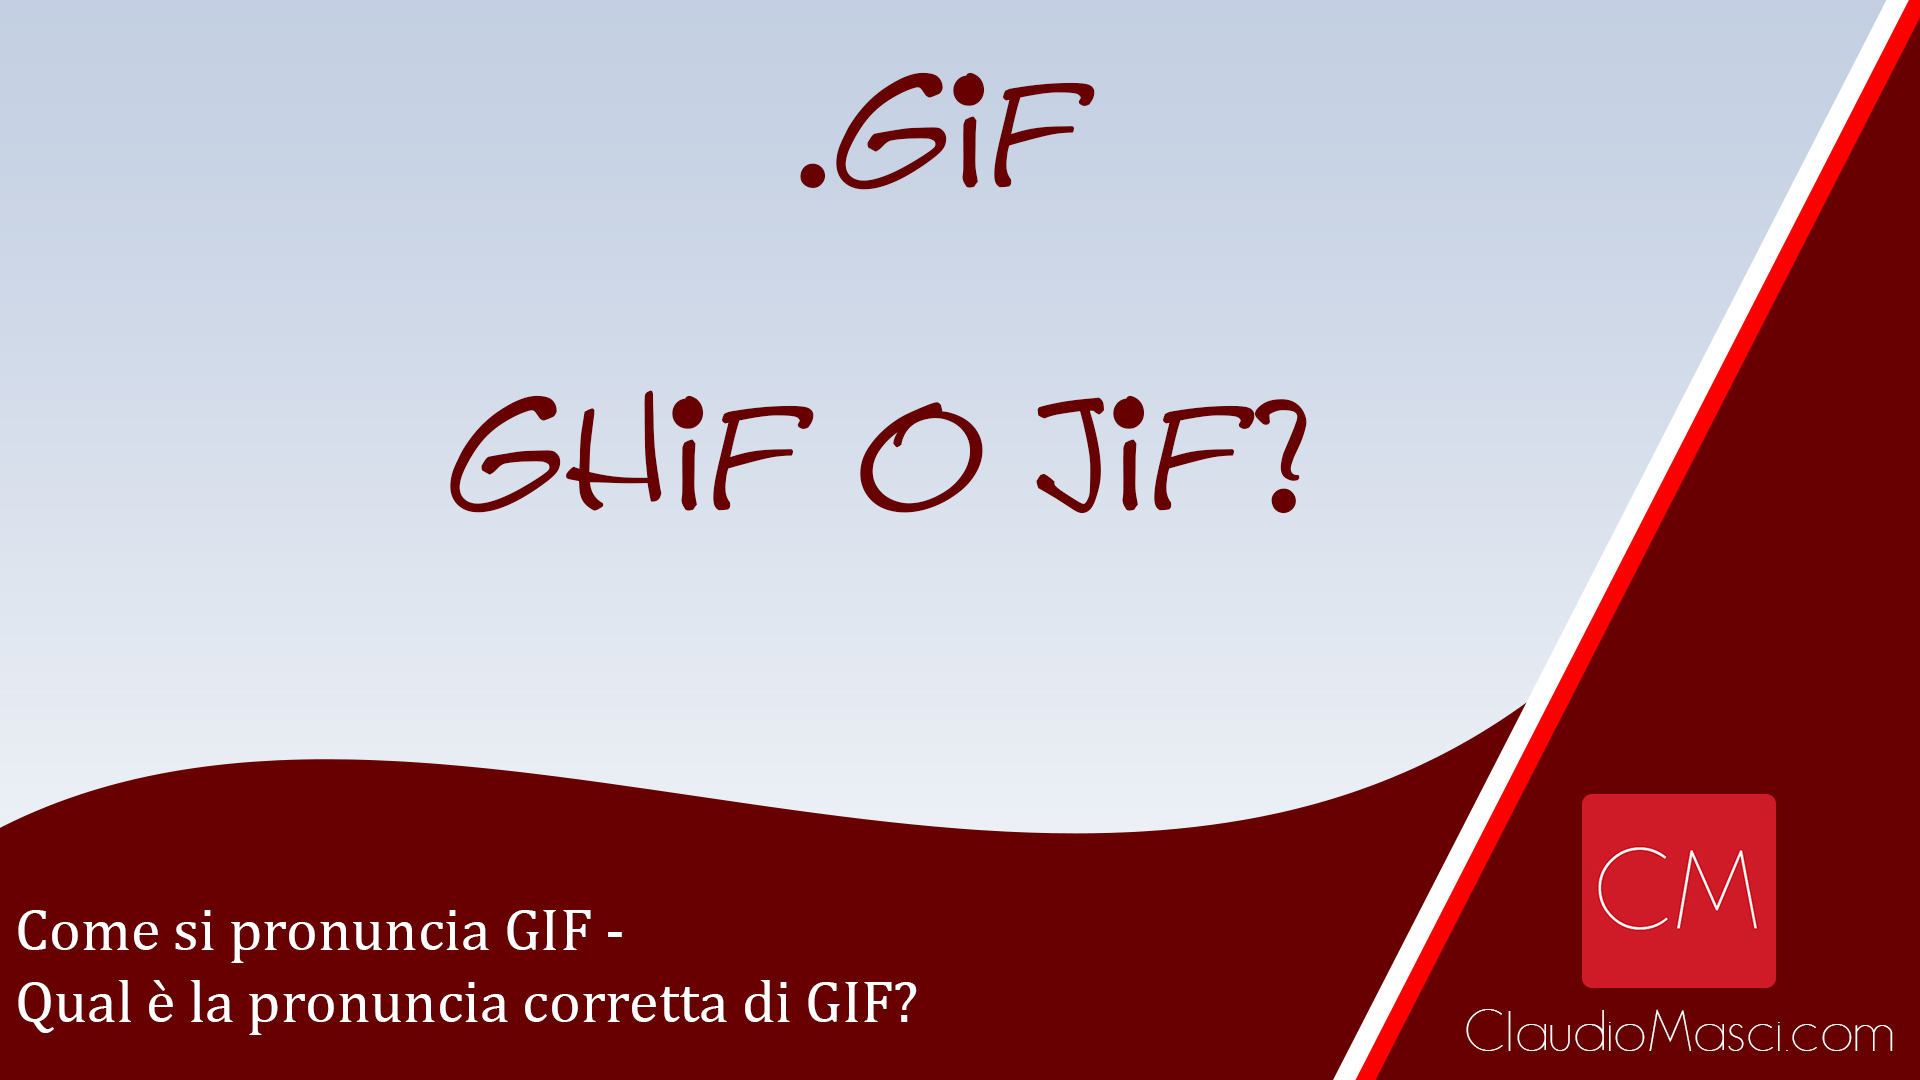 Come si pronuncia GIF – Qual è la pronuncia corretta di GIF?